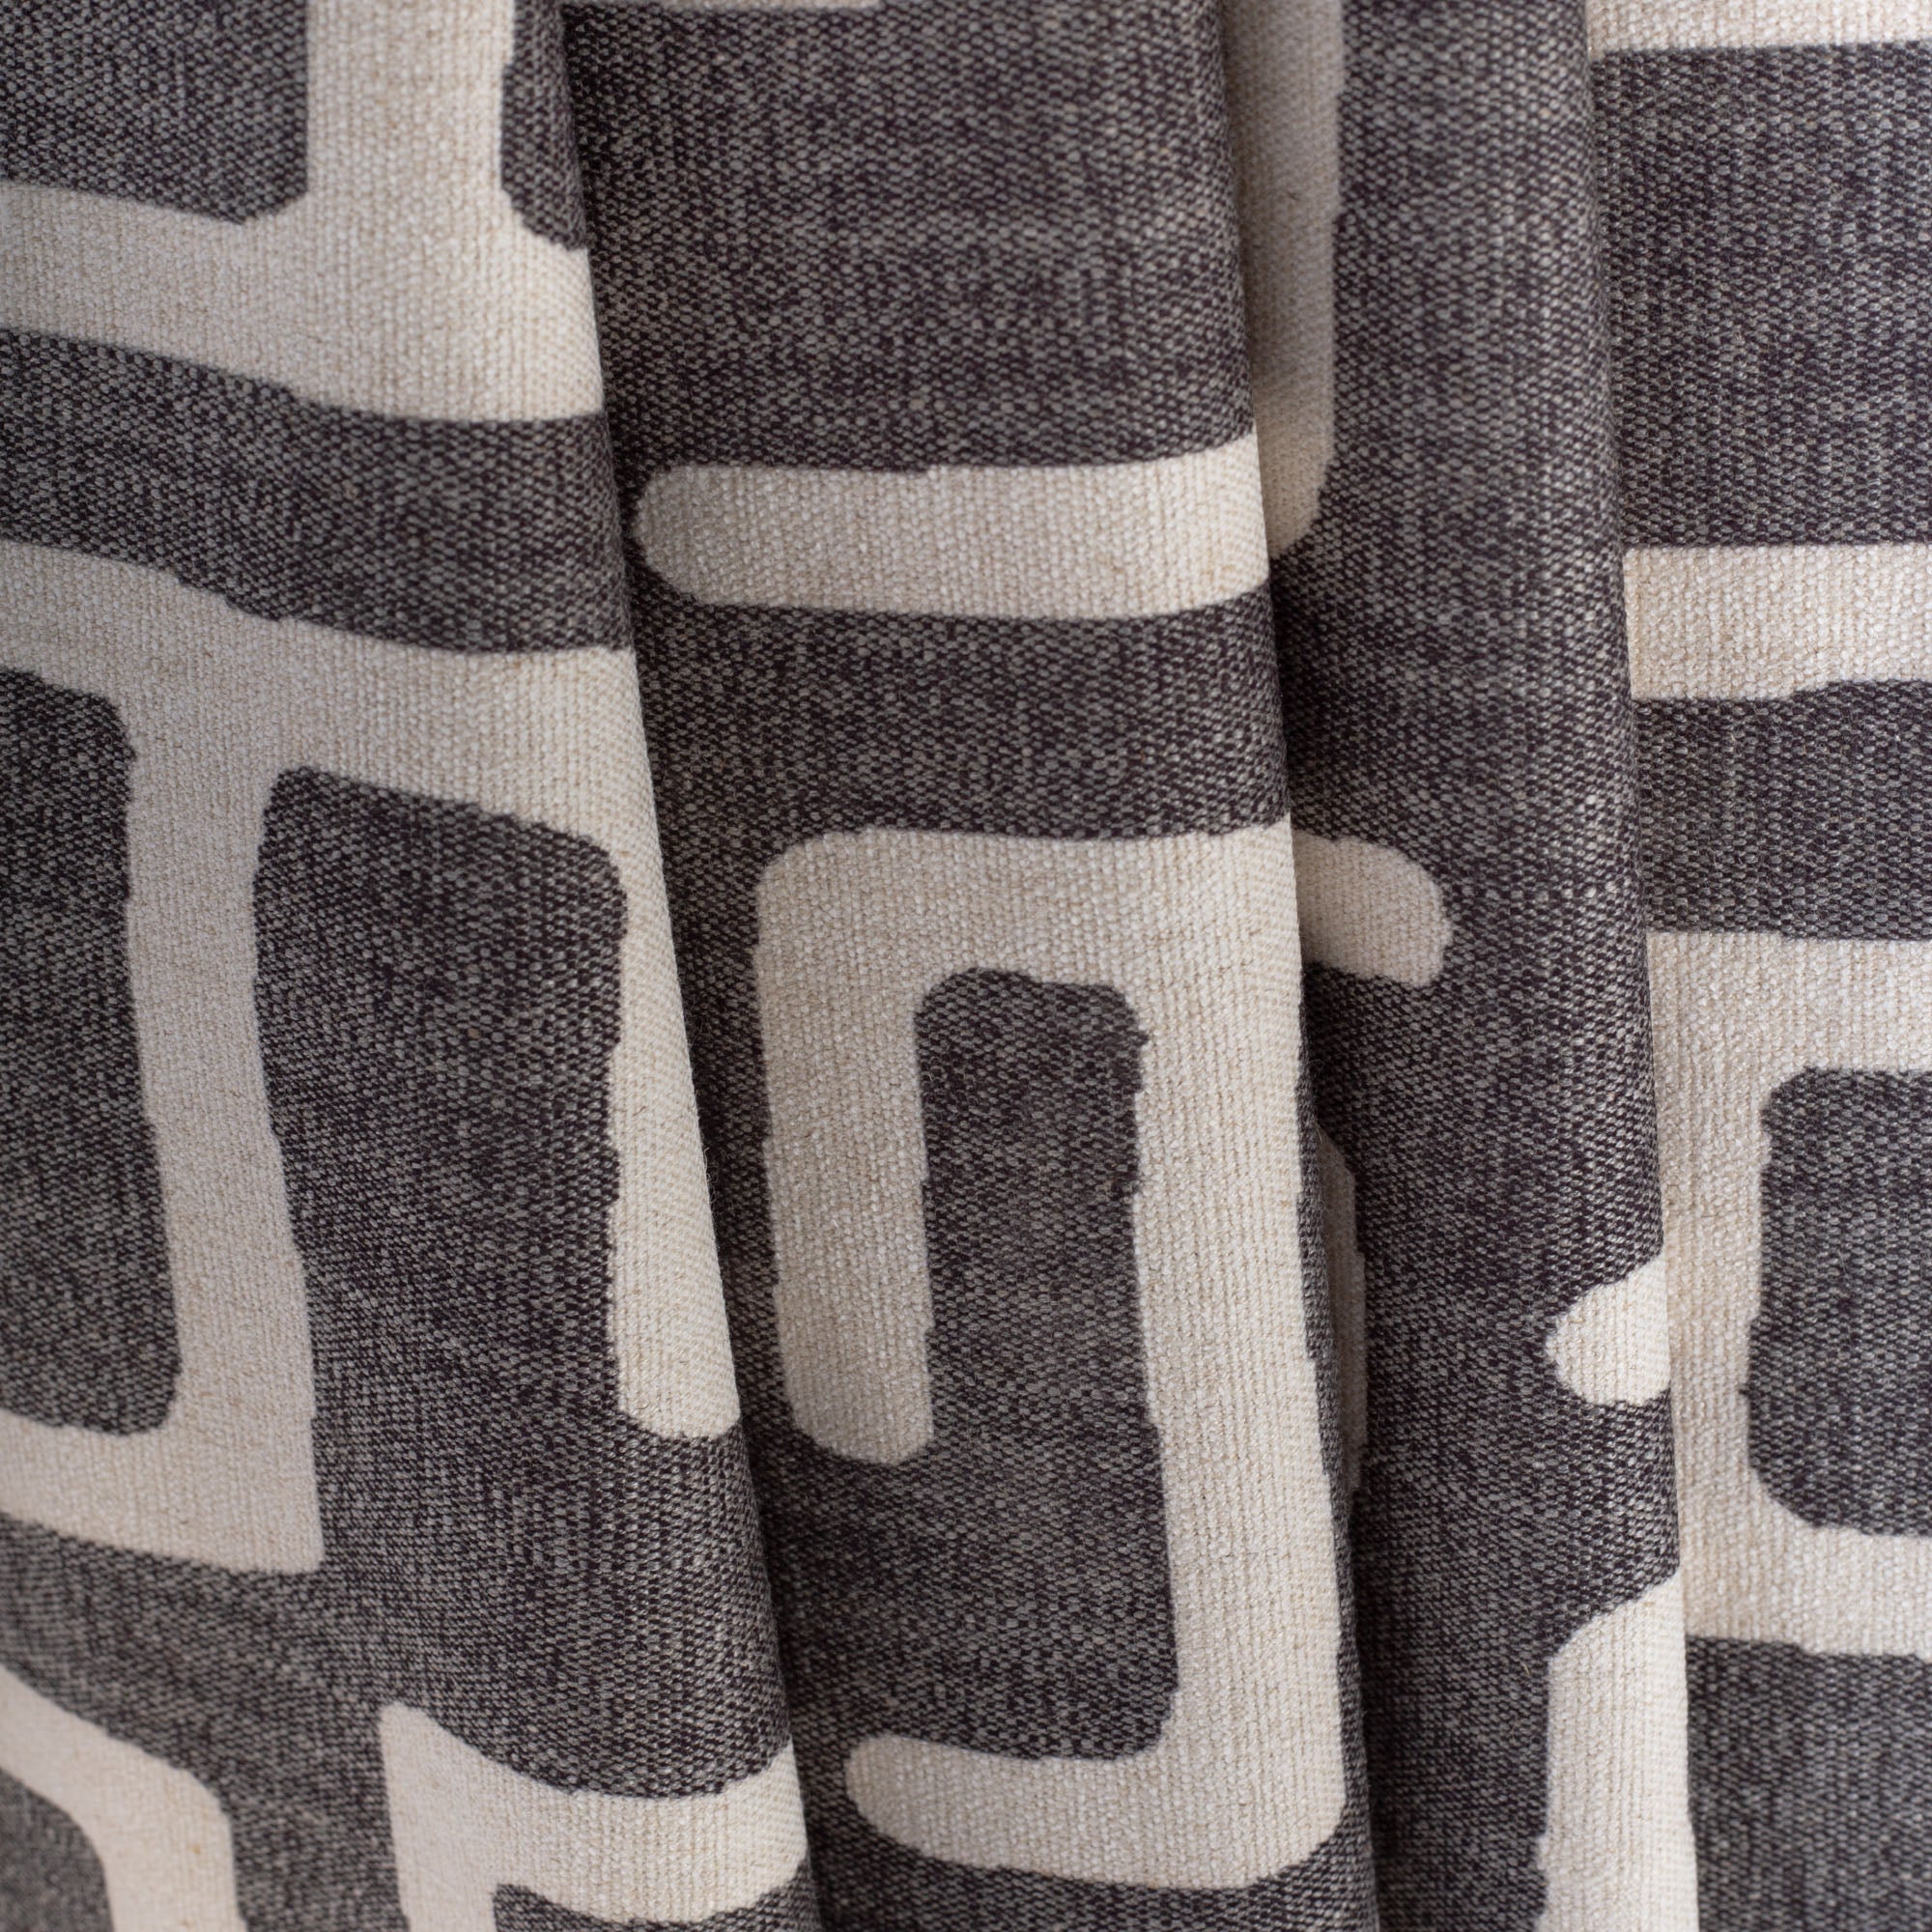 dark grey and beige kuba inspired print fabric